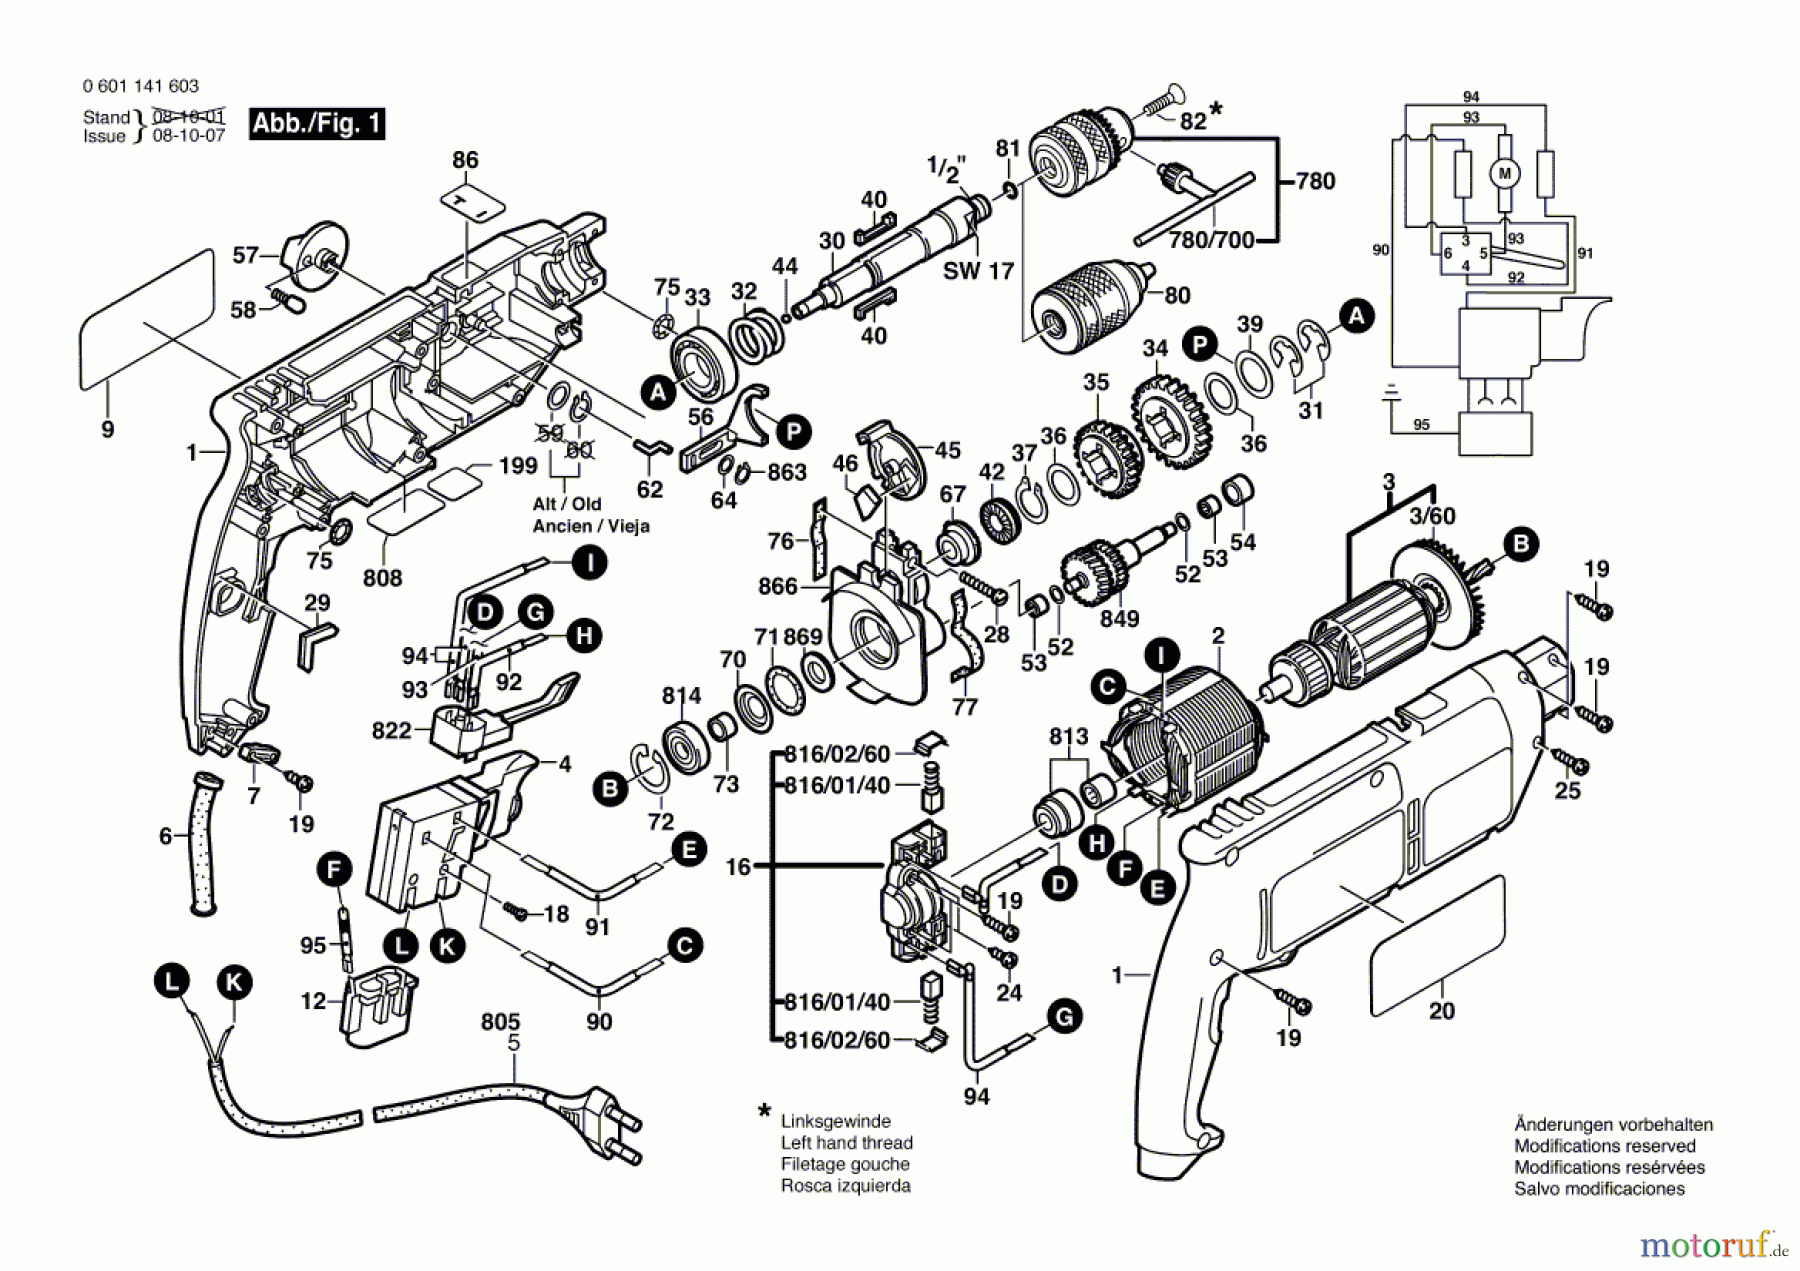  Bosch Werkzeug Schlagbohrmaschine GSB 18-2 RE Seite 1